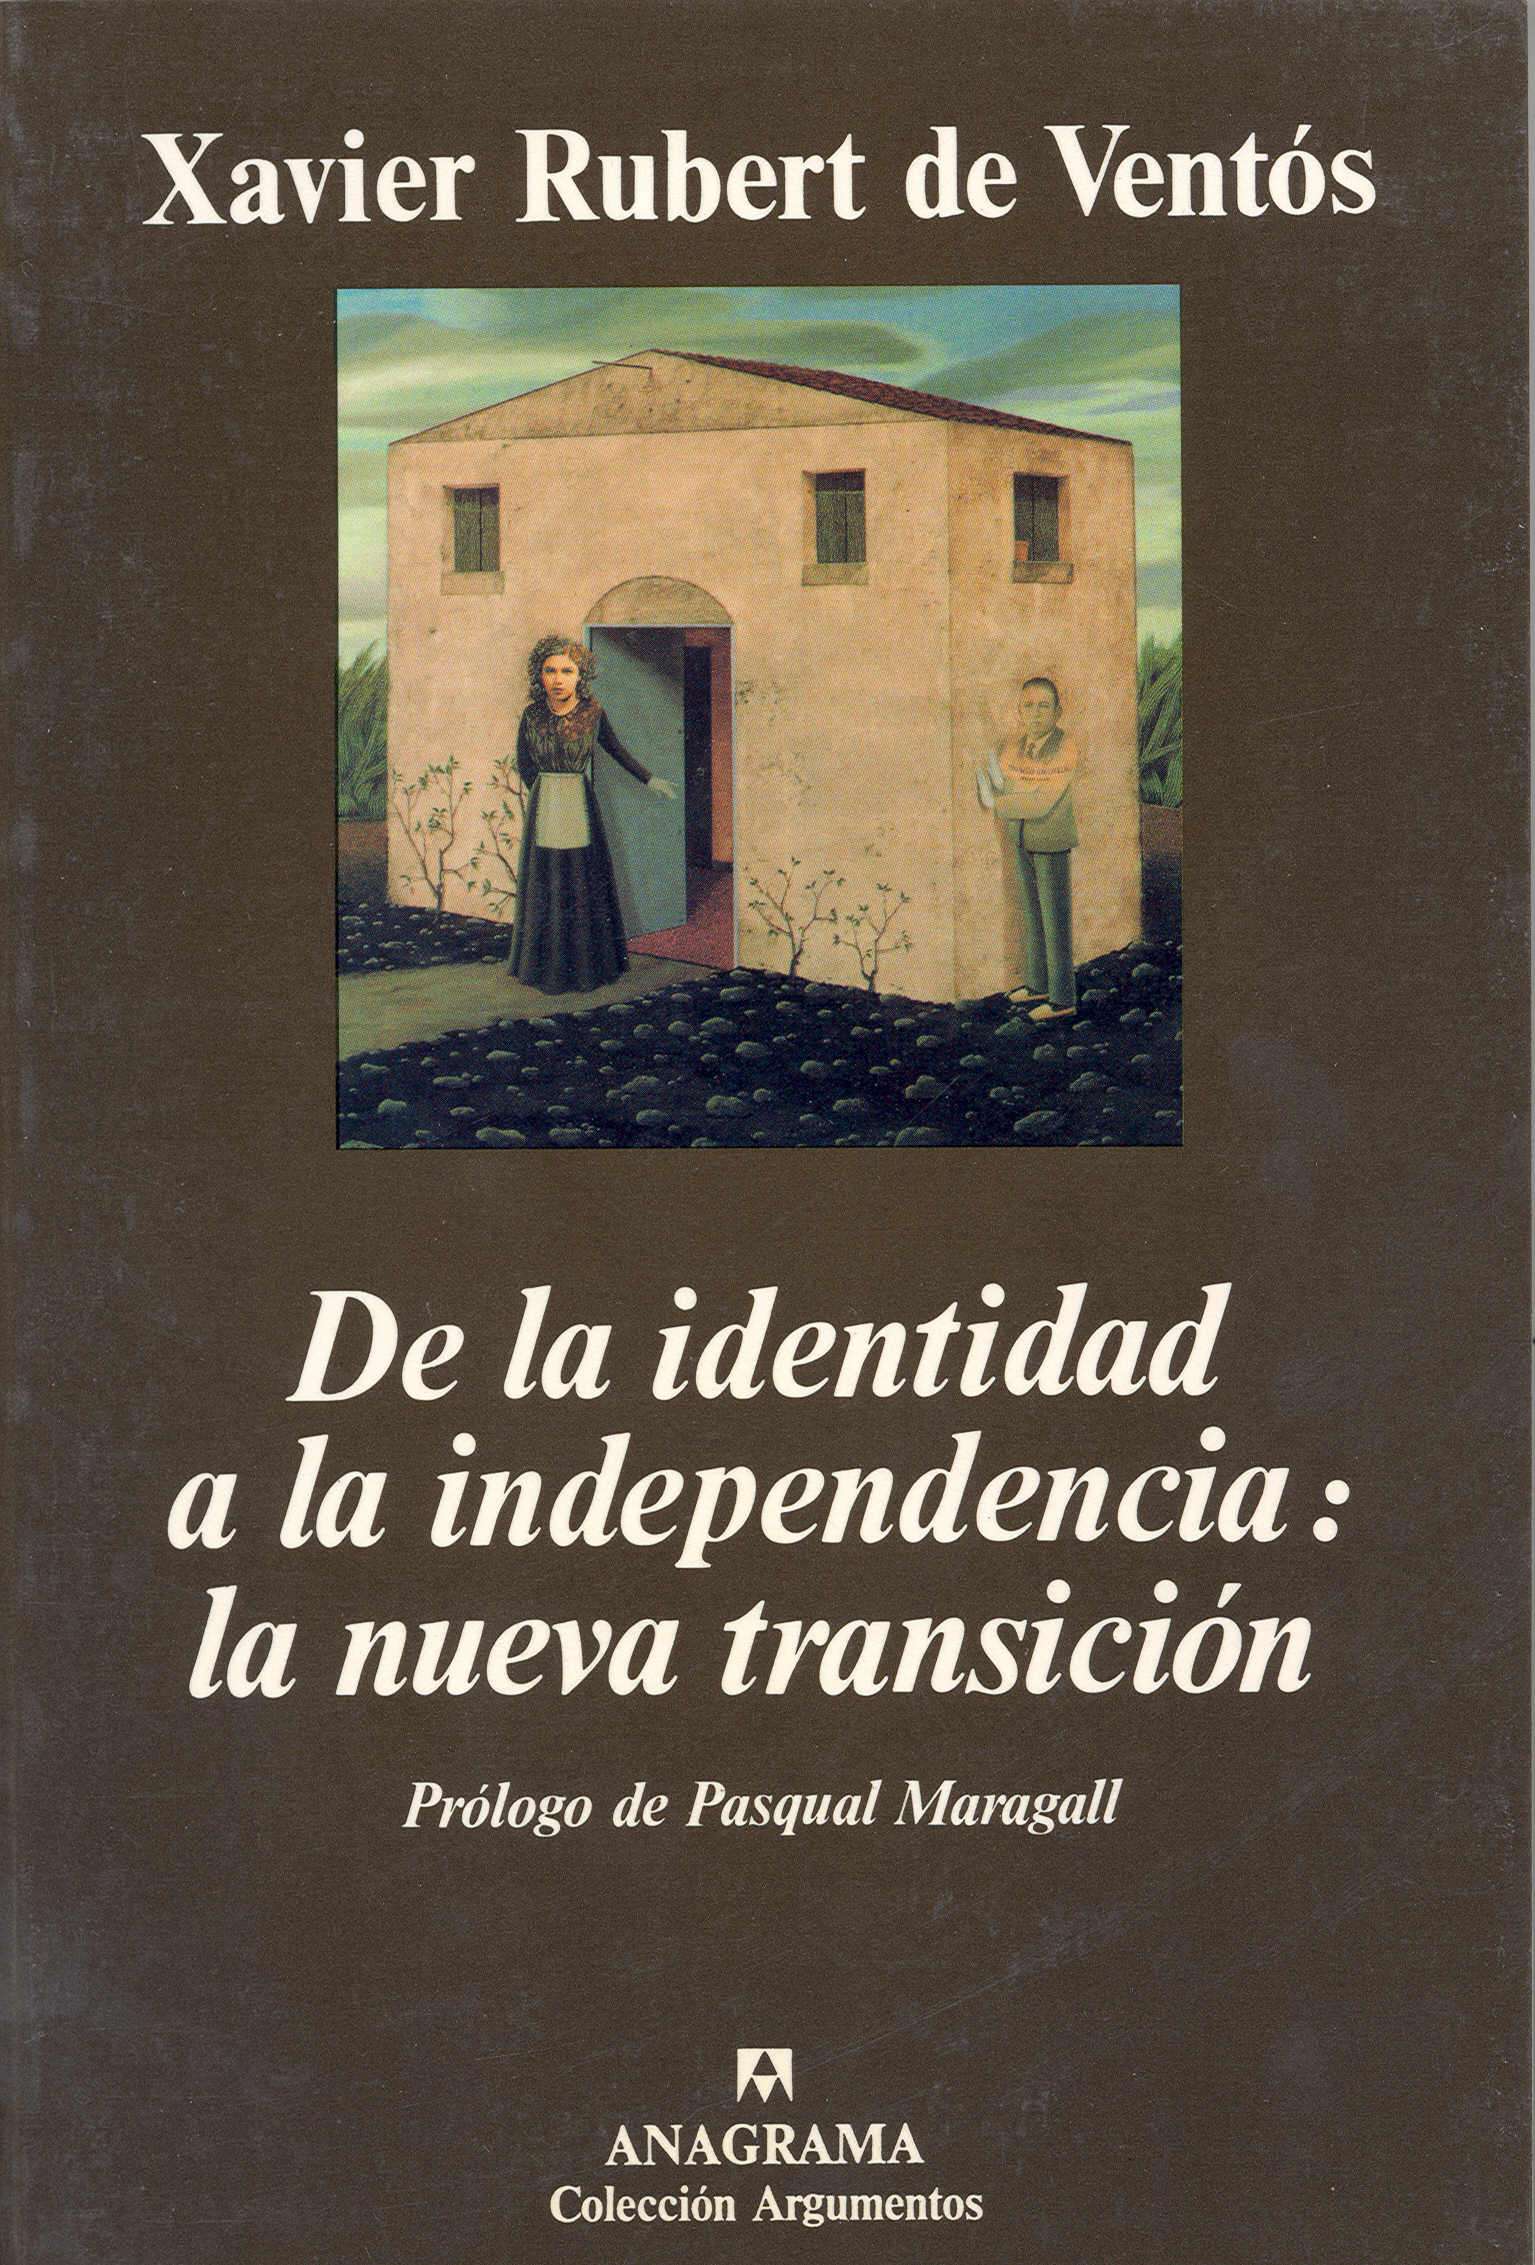 Portado de "De la identidad a la independencia"